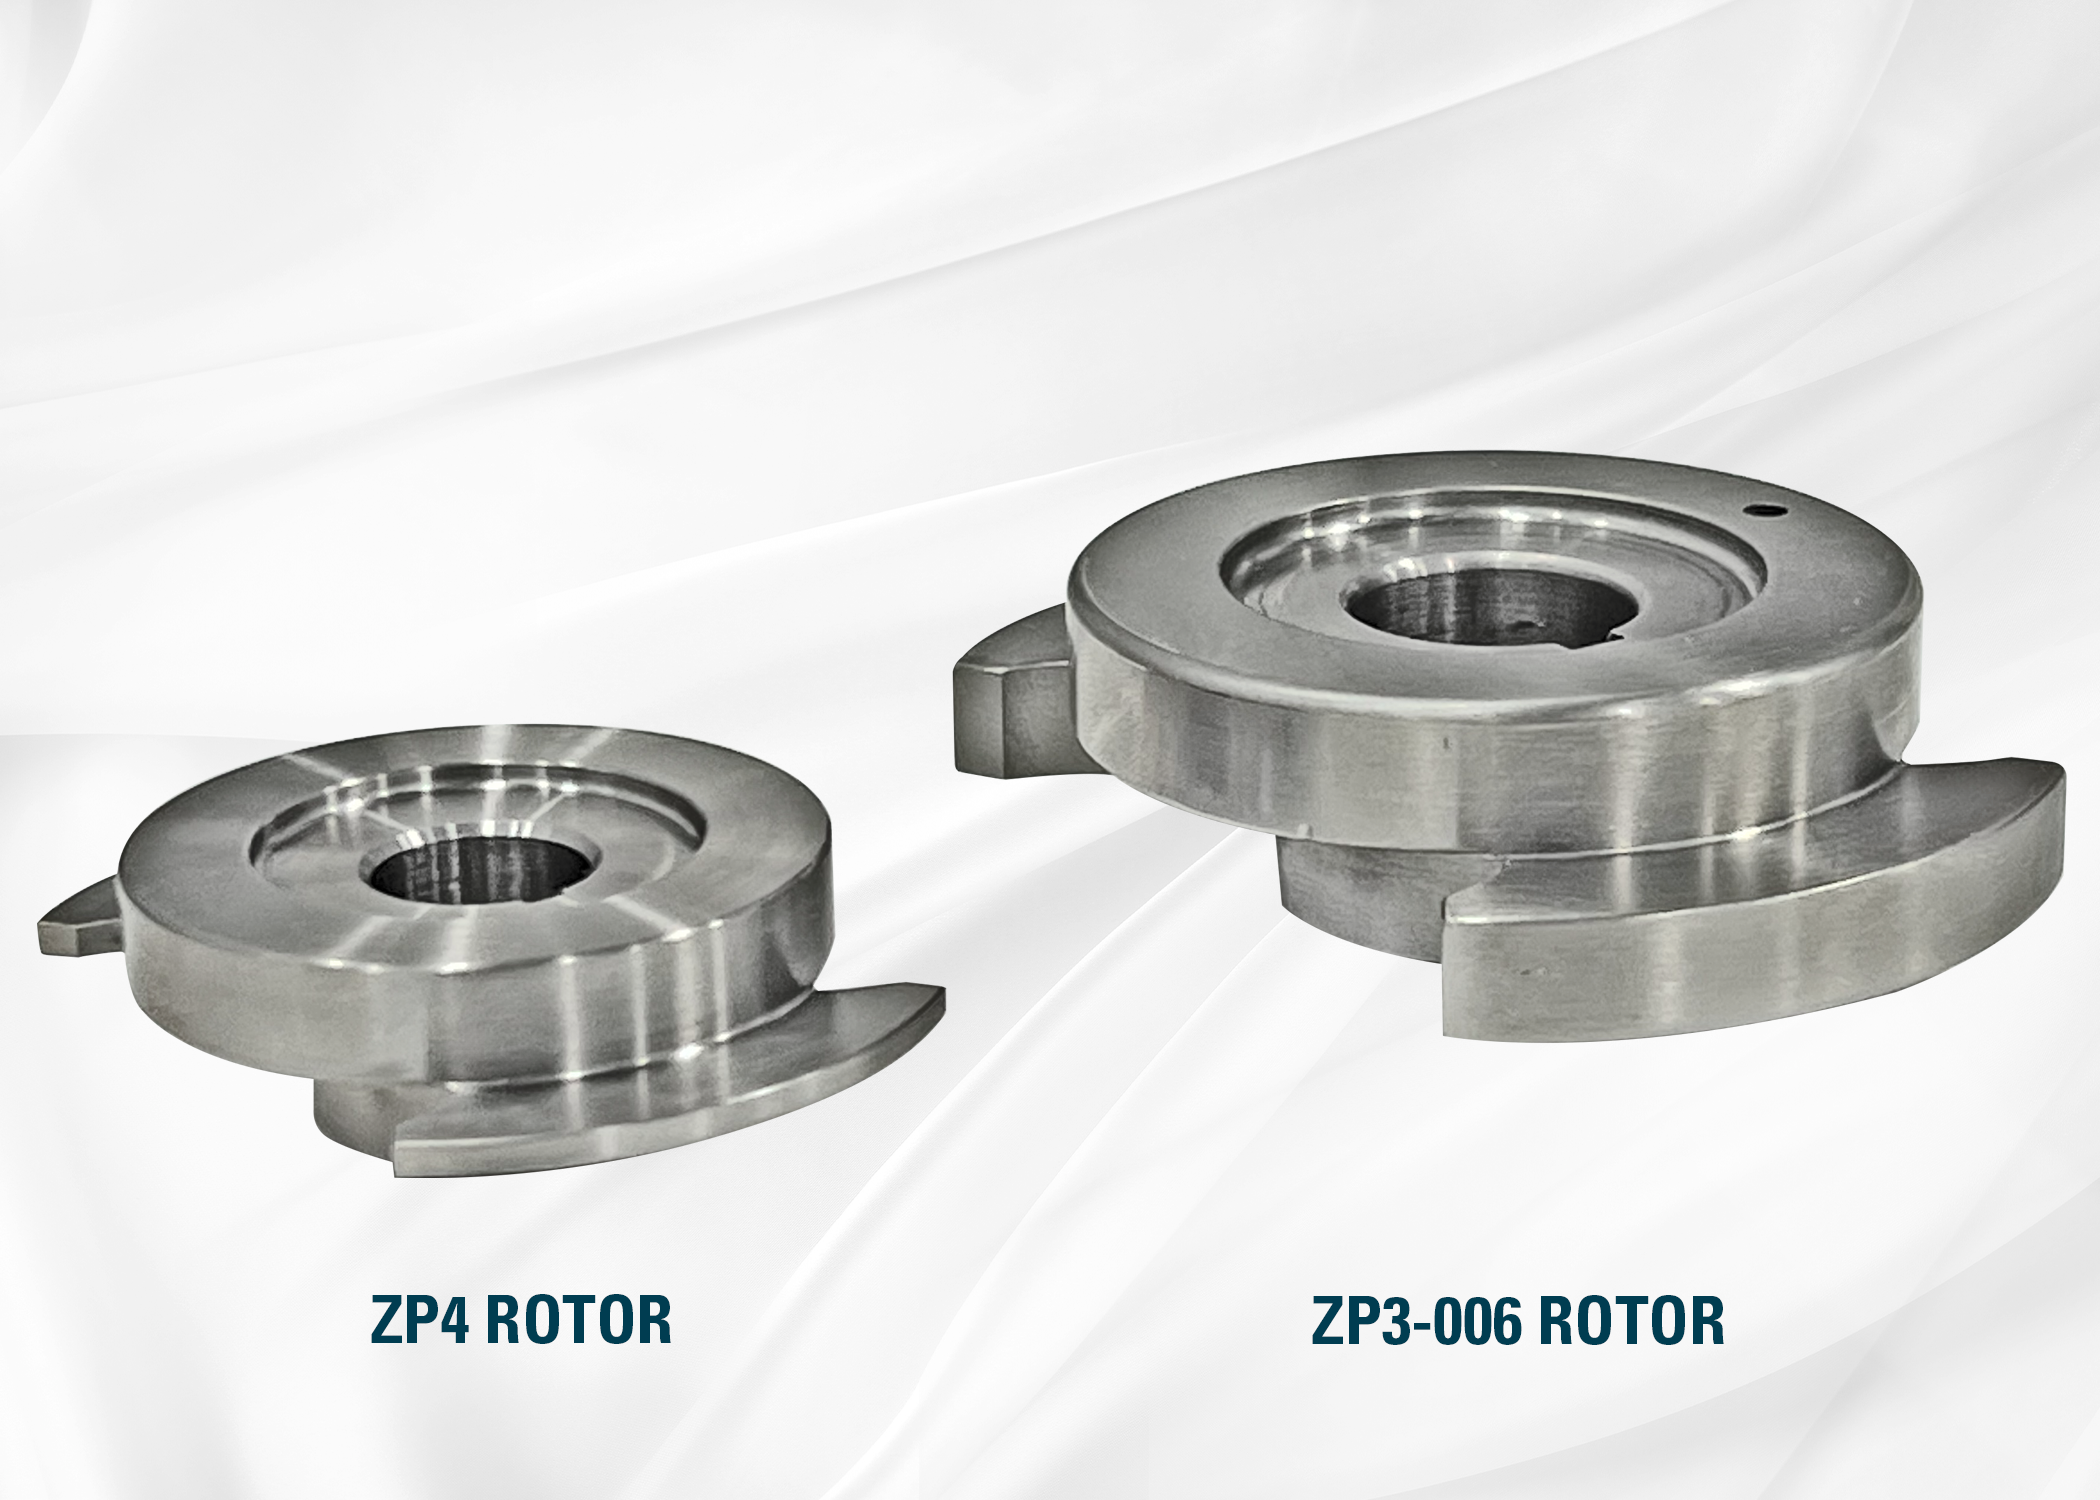 Vergleich der Rotoren ZP4 und ZP3-006